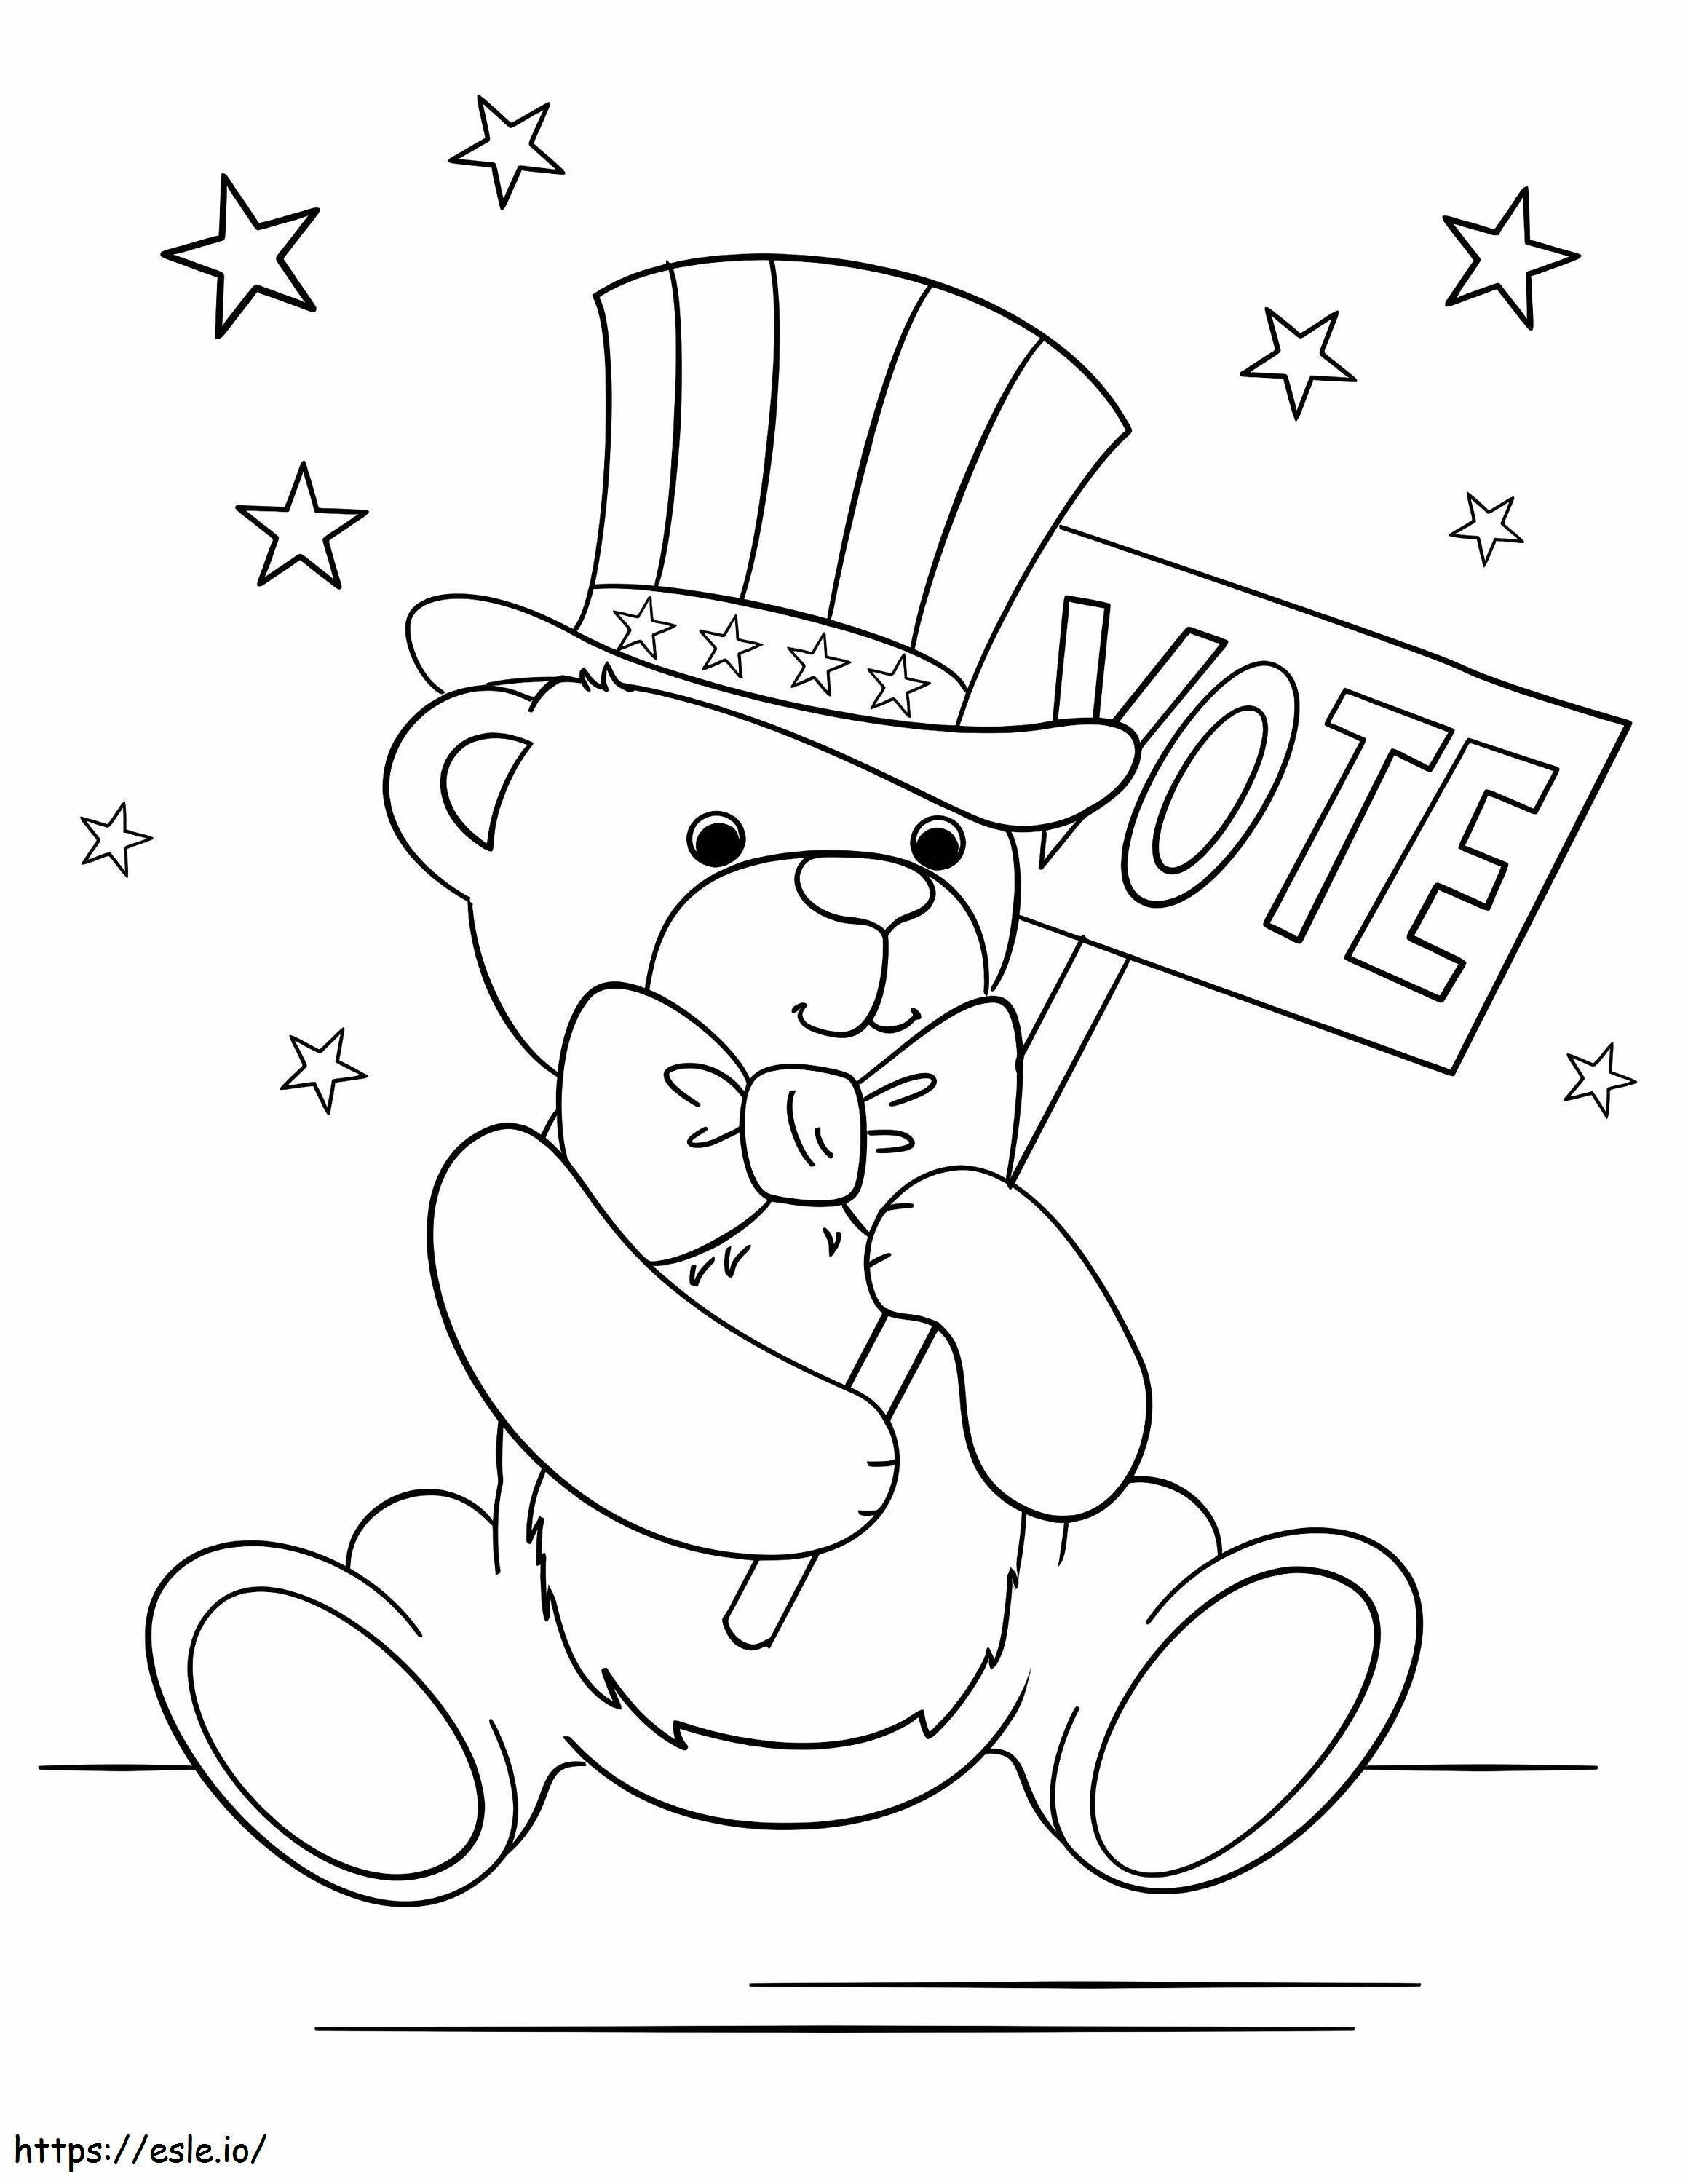 Teddy Bear Patriotic coloring page